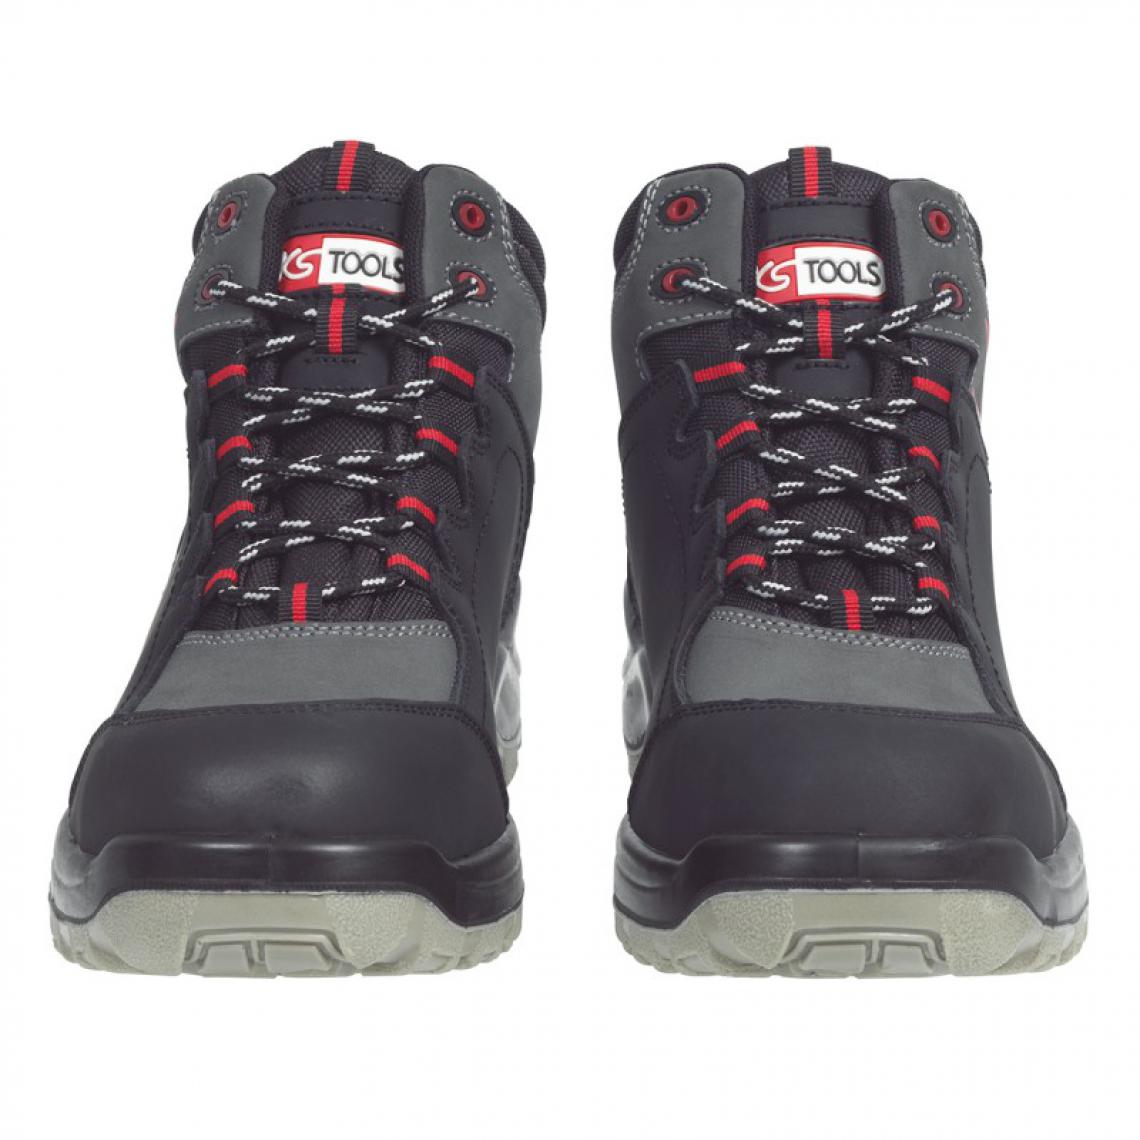 Kstools - Chaussures de sécurité montante KSTOOLS Couleur grise et noire taille 44 - Equipement de Protection Individuelle